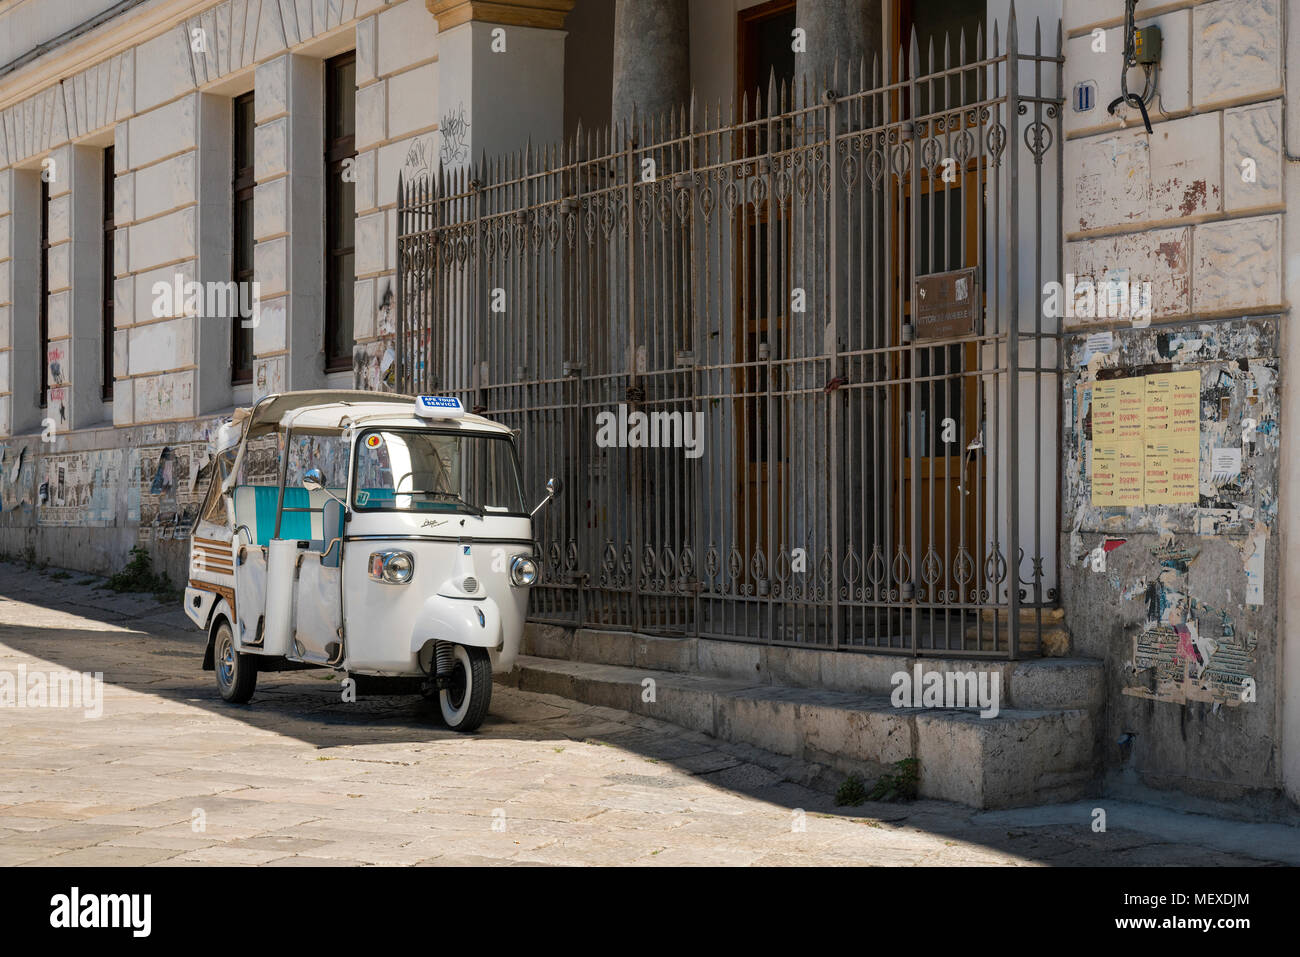 Eine weiße Piaggio Ape Calessino tour Taxi außerhalb einer High School Gebäude in Palermo, Sizilien, Italien geparkt. Das Gebäude ist das "Liceo Classico Vittorio Stockfoto